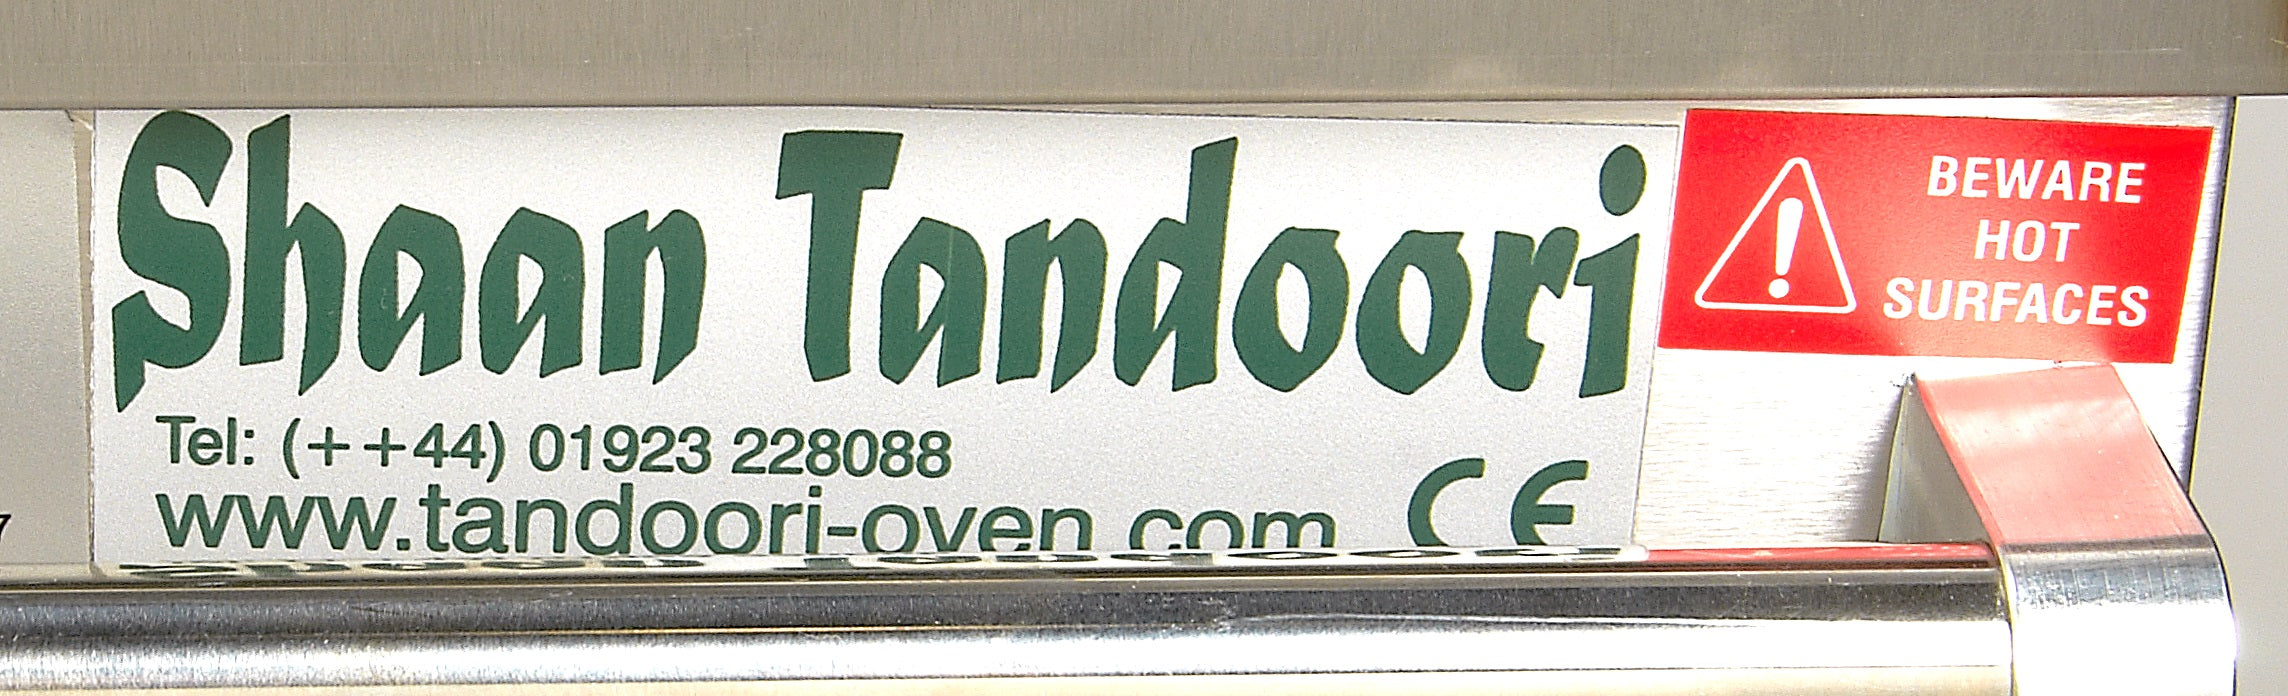 Shaan Tandoor oven